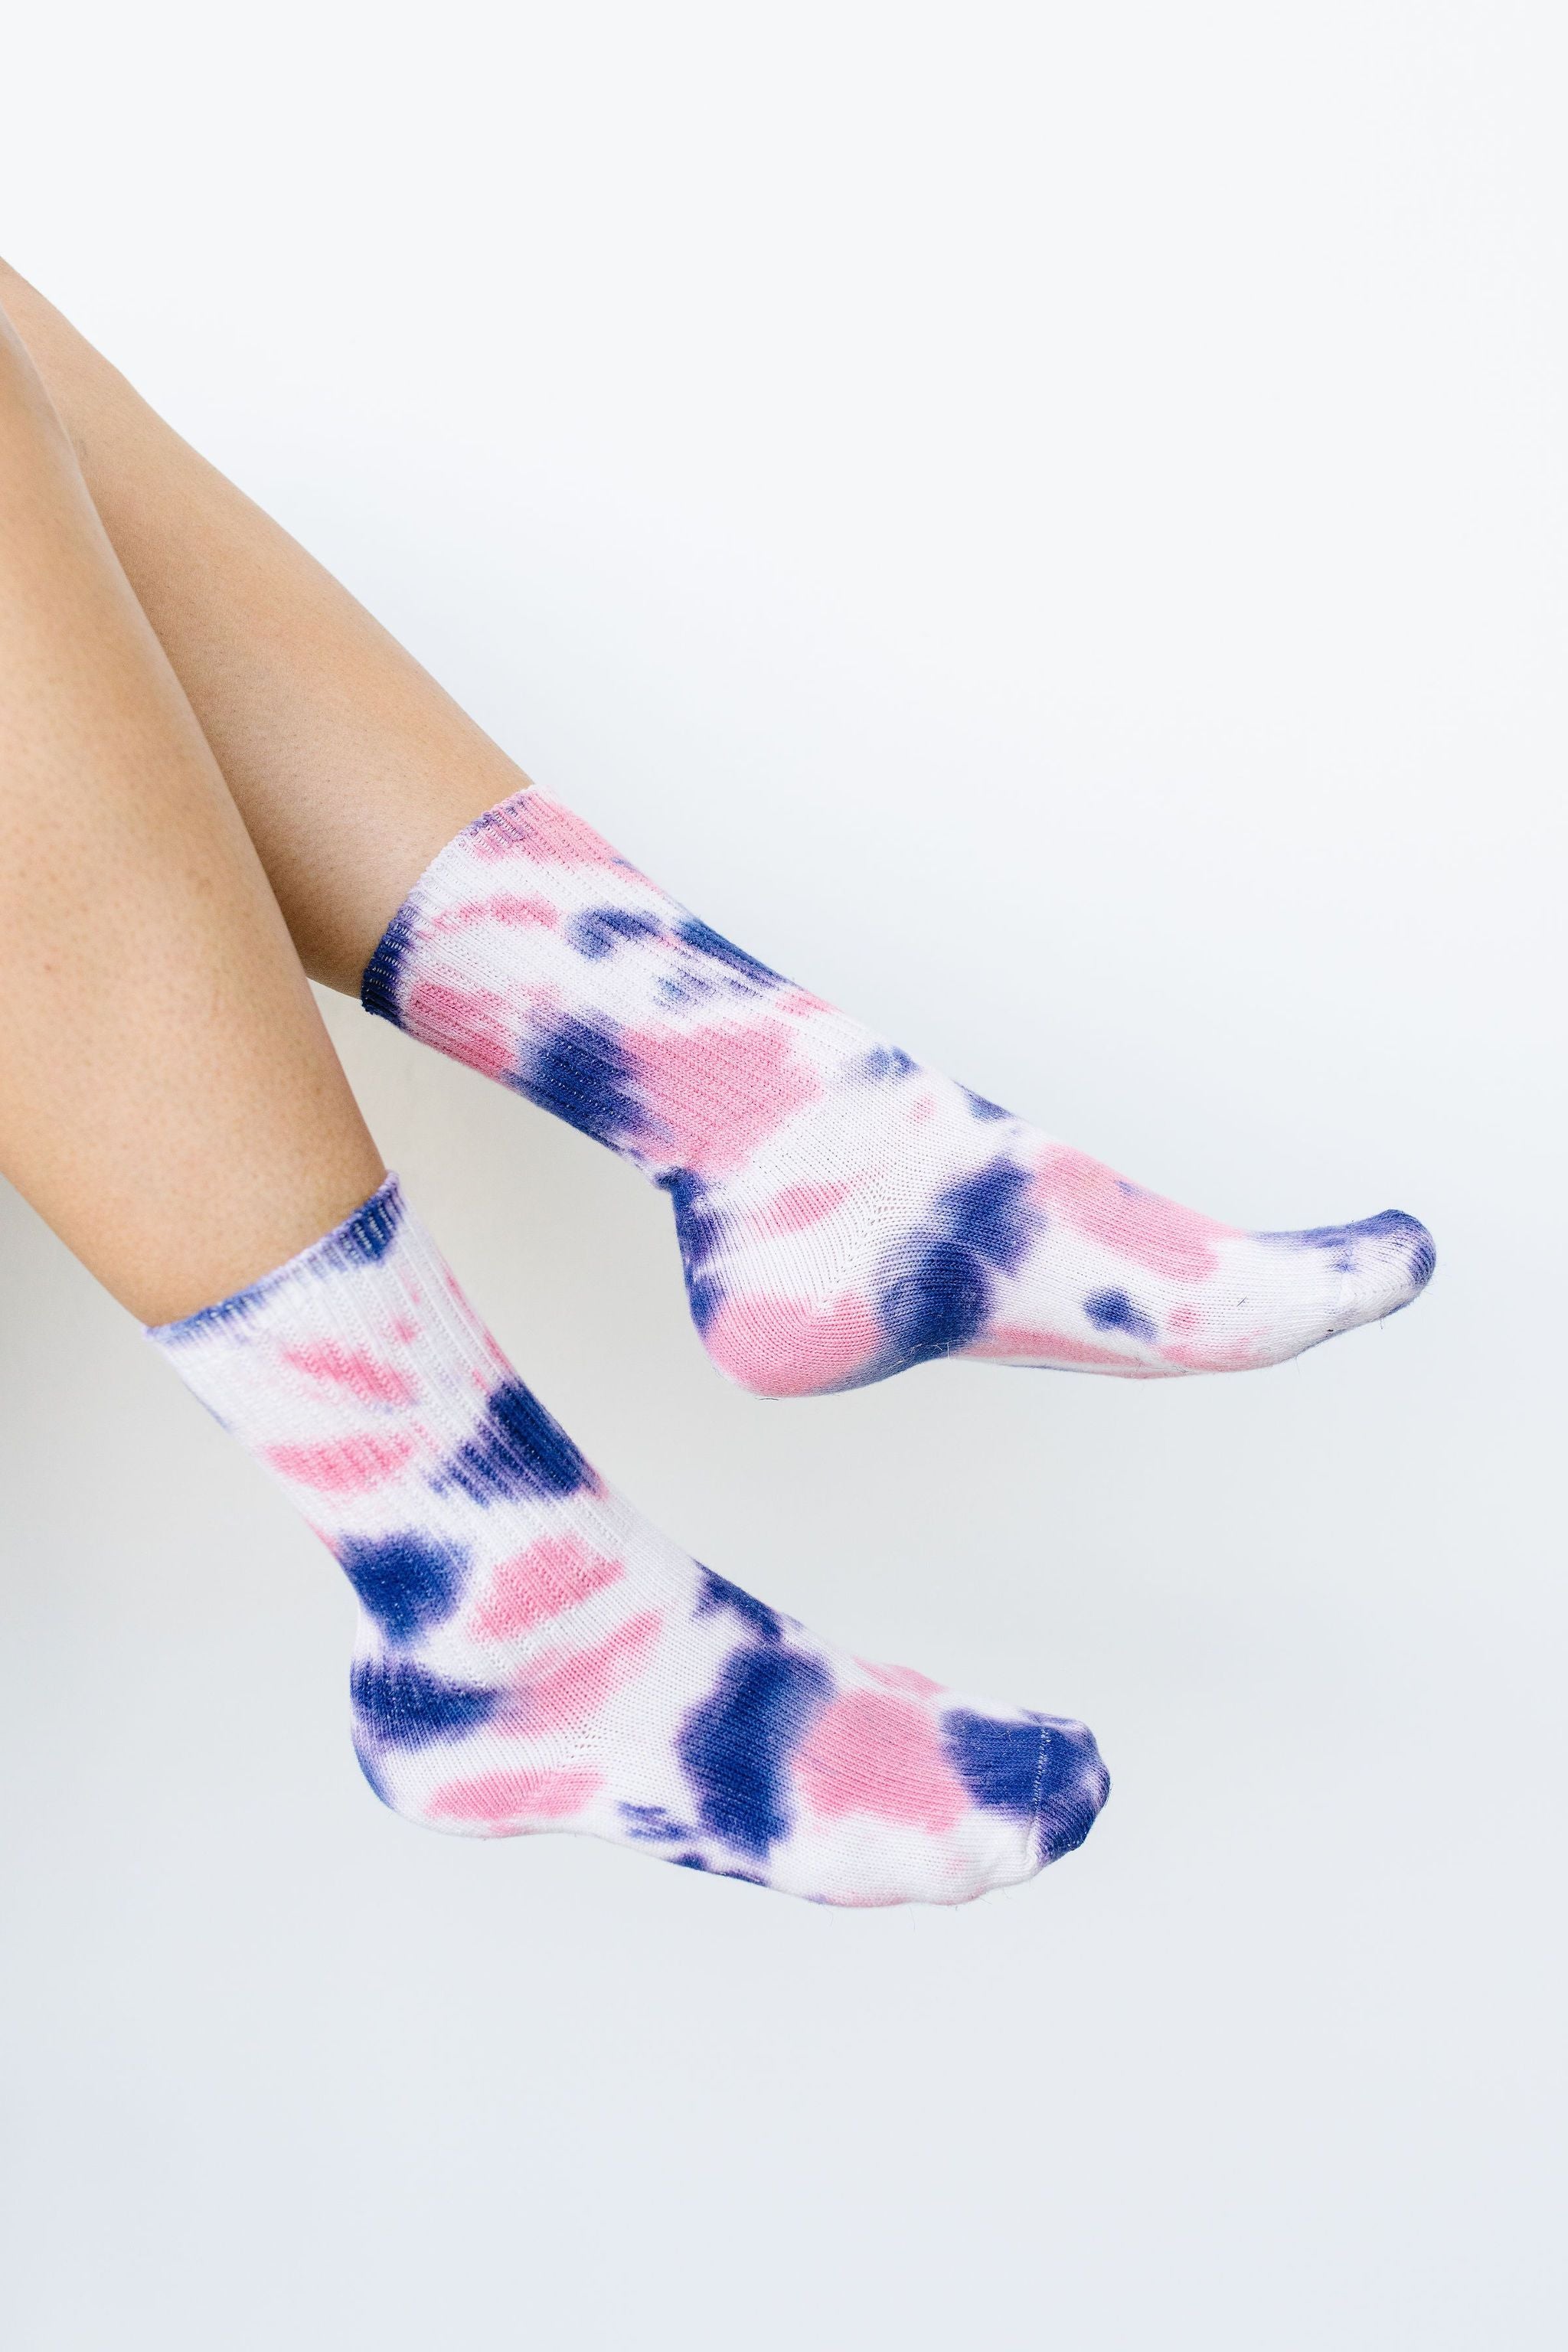 Happy Feet Tie Dye Socks In Pink & Indigo